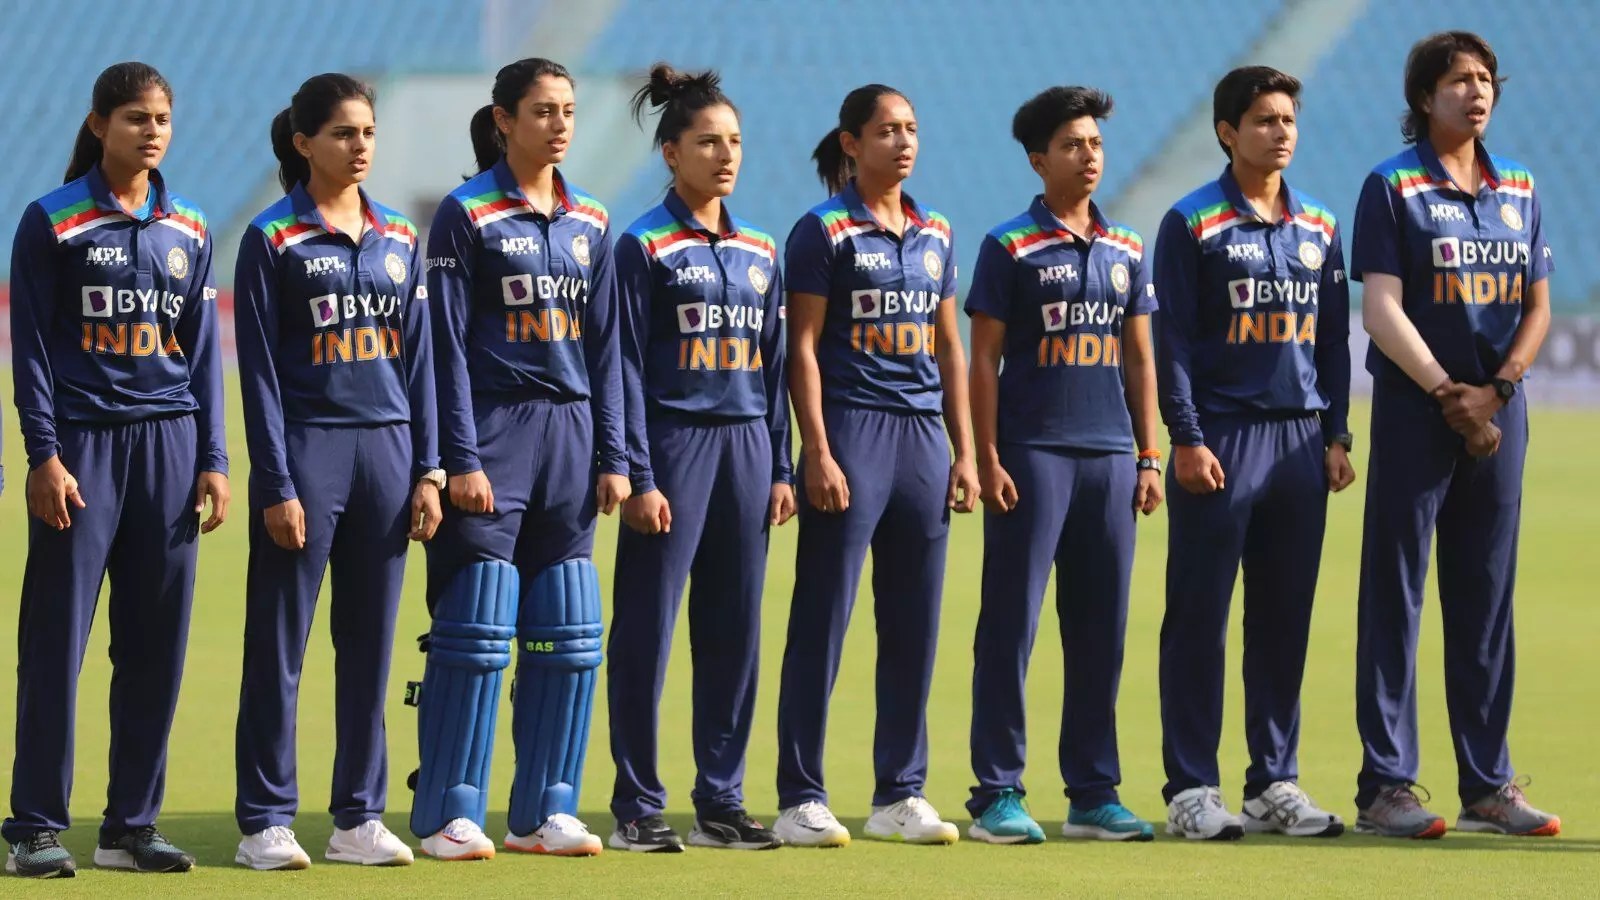 Kadınlar IPL: BCCI, önümüzdeki yıl Kadınlar IPL'nin açılış baskısına başlamak istiyor, diyor Başkan Saurav Ganguly, 'ilk sezonun gelecek yılın başlarında başlamasını bekliyoruz'